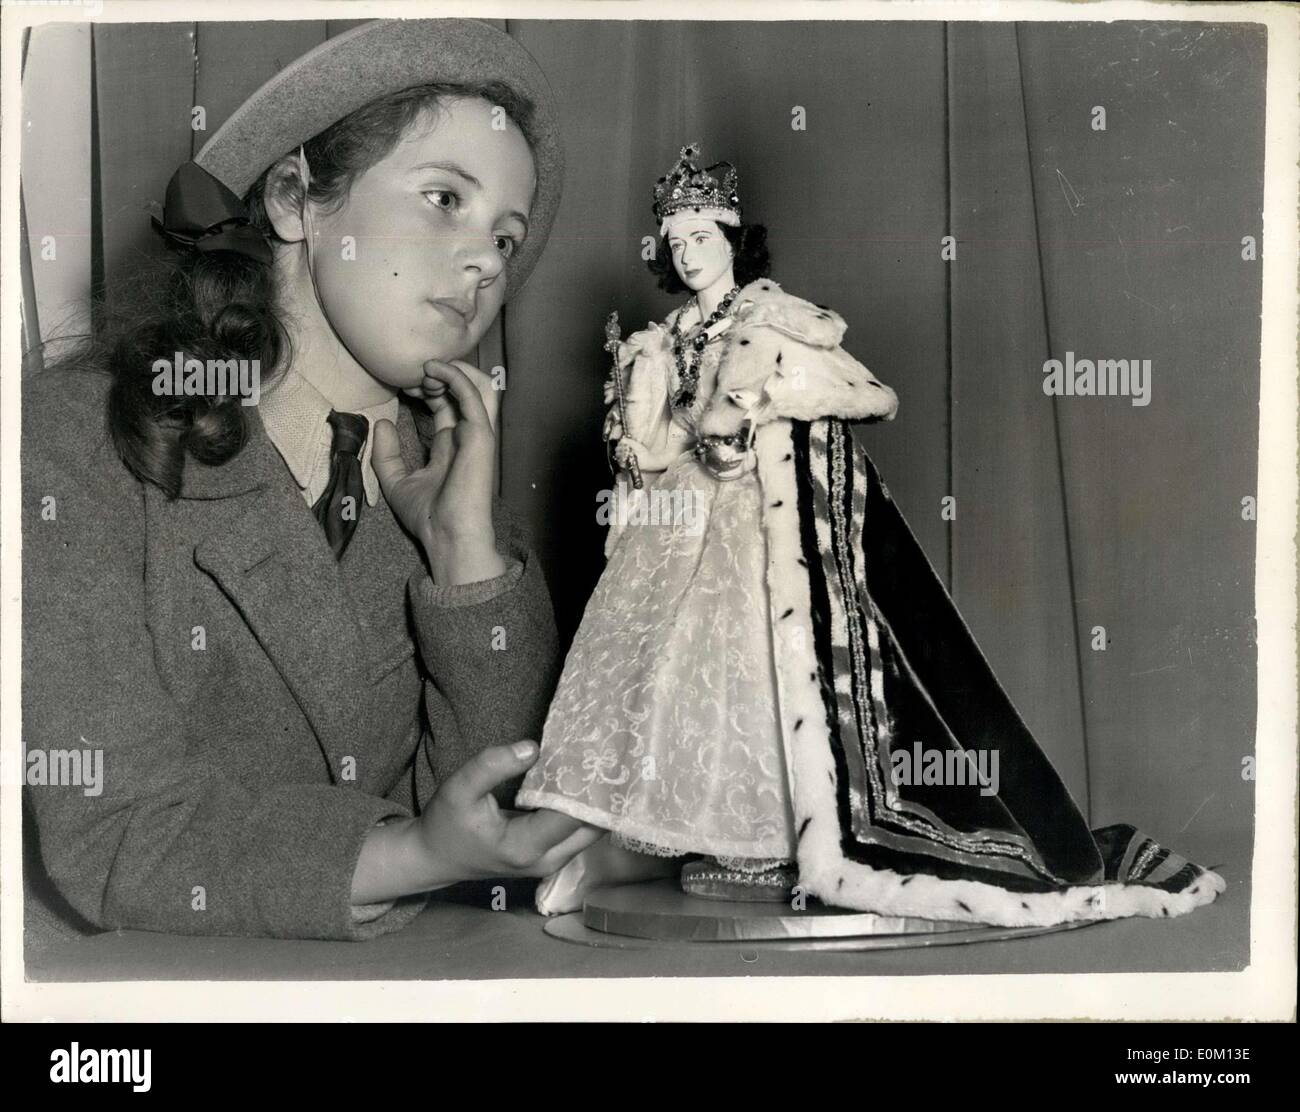 23 février, 1953 - Souvenirs du couronnement approuvé sur montrer au public. Sa Majesté la Reine - en miniature. L'exposition de plus de mille Souvenirs du couronnement - choisie par le couronnement du Conseil du Design Industriel, est d'être ouvert au public demain à la Plateau Centerm, Regent Street.. Photo : Keystone montre- onze ans Barbara Pinkerton de Hampstead - admire une poupée réplique de Sa Majesté la Reine à Coronation Robes - conçu par la poupée d'art de Chelsea - Les décideurs lors de l'exposition. Banque D'Images